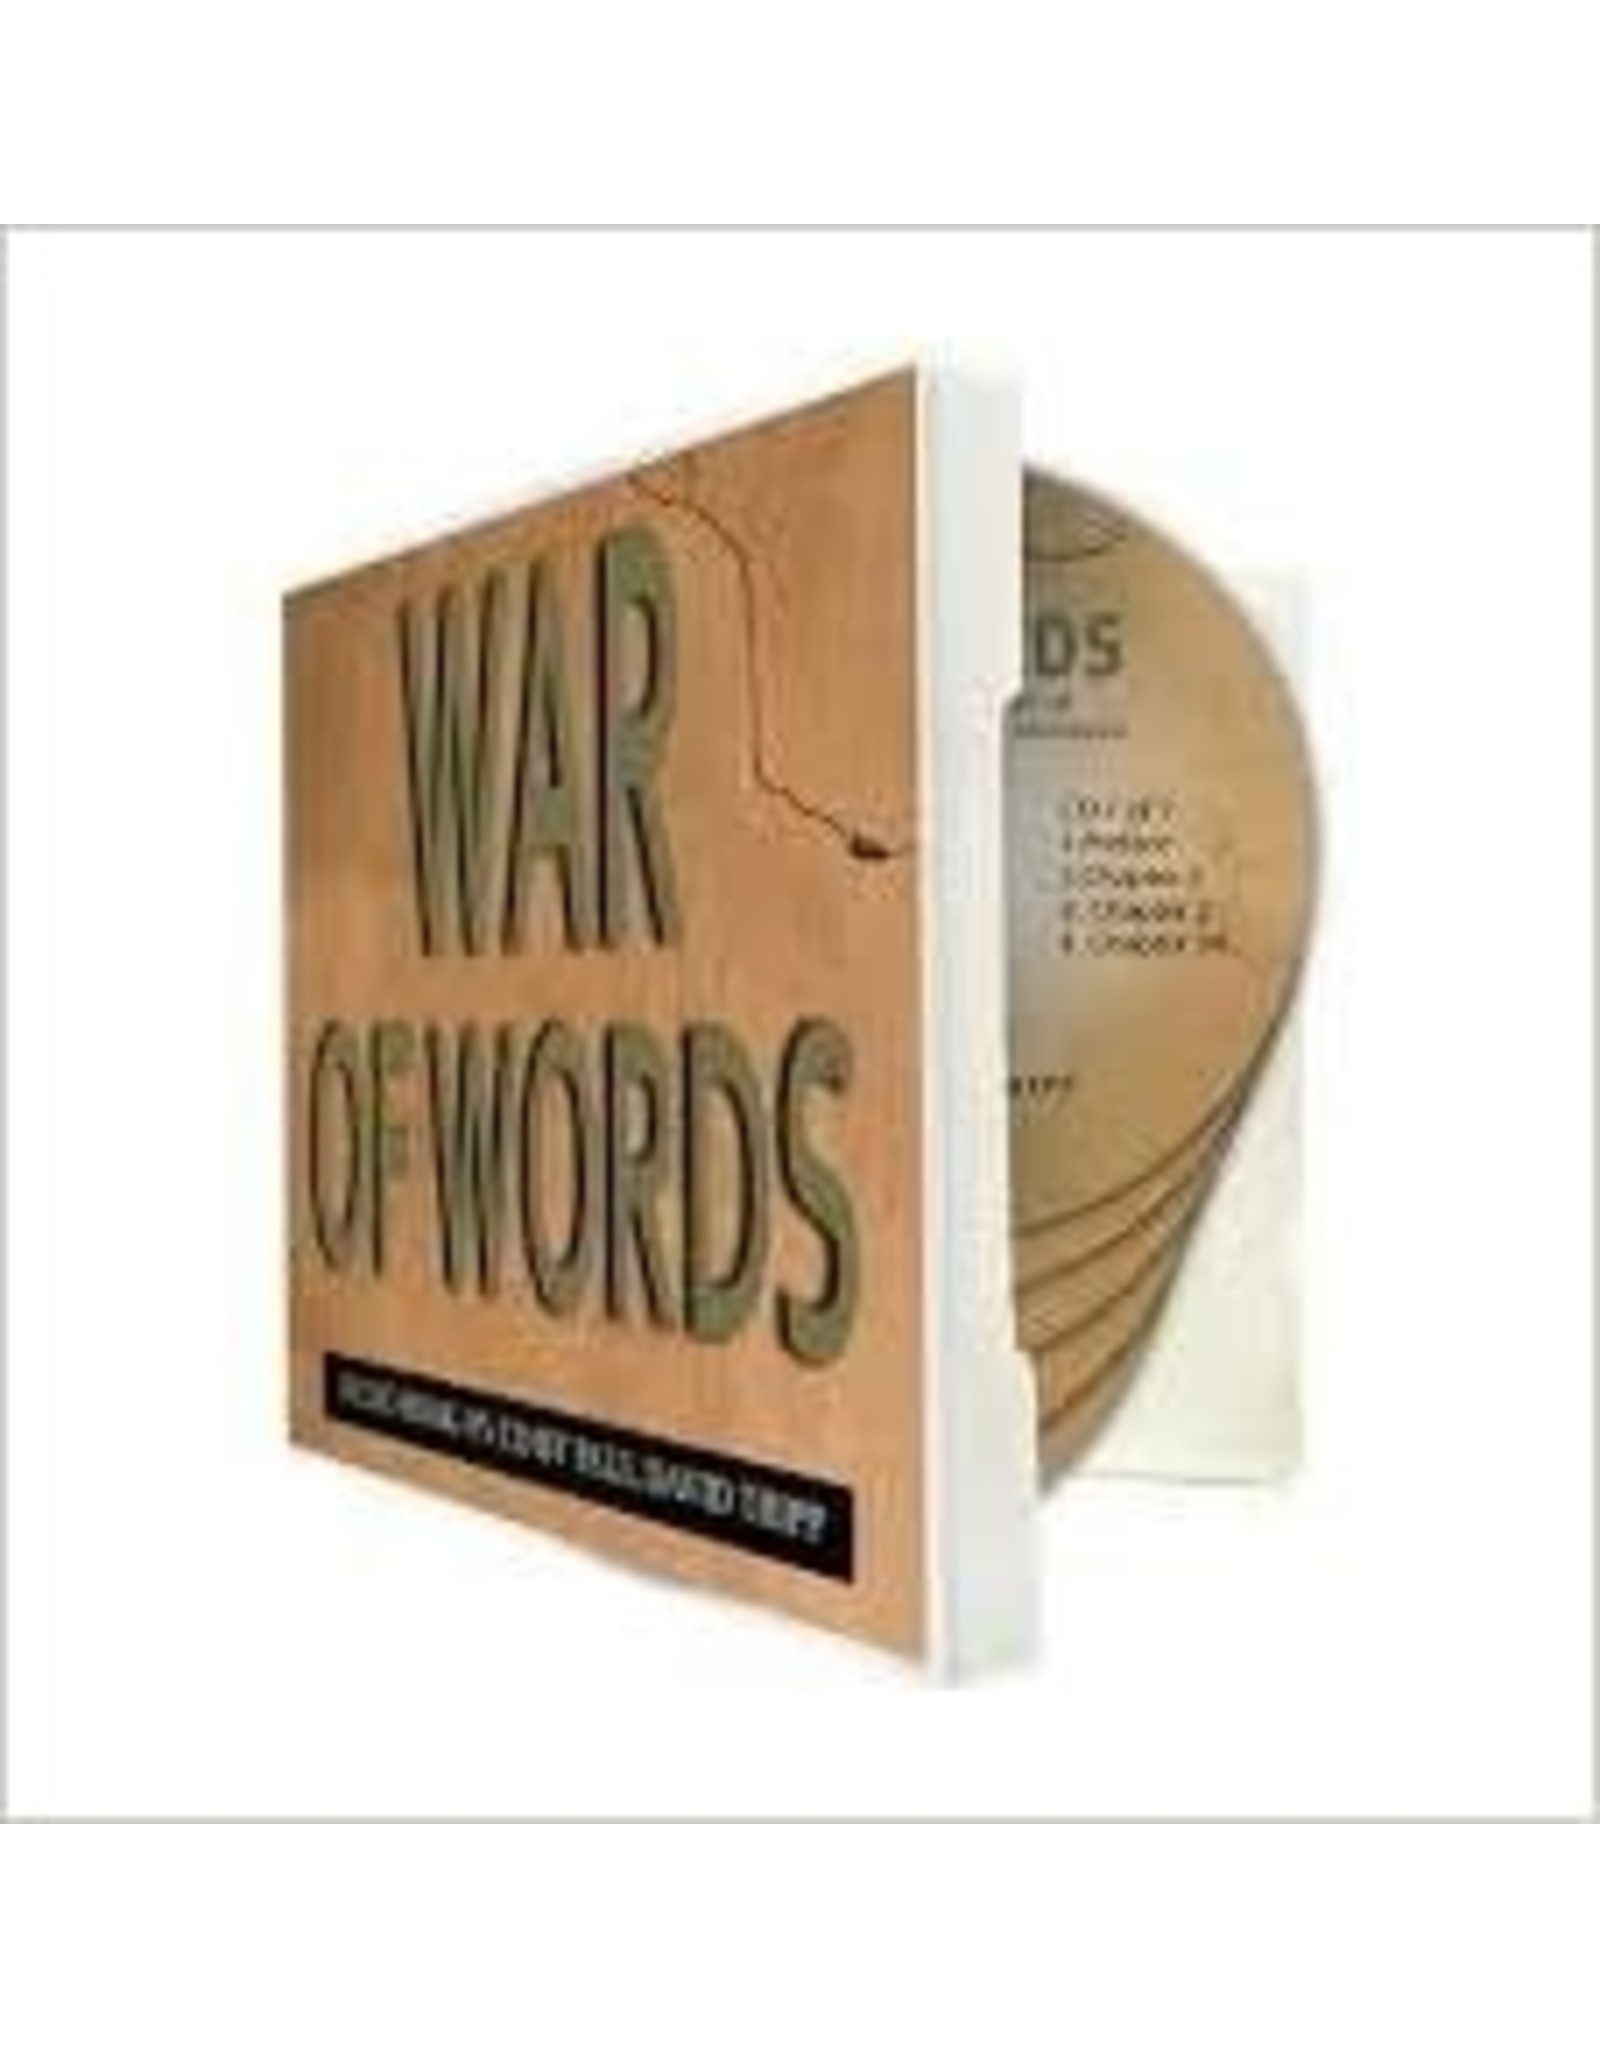 Tripp War of Words -  Audio Book